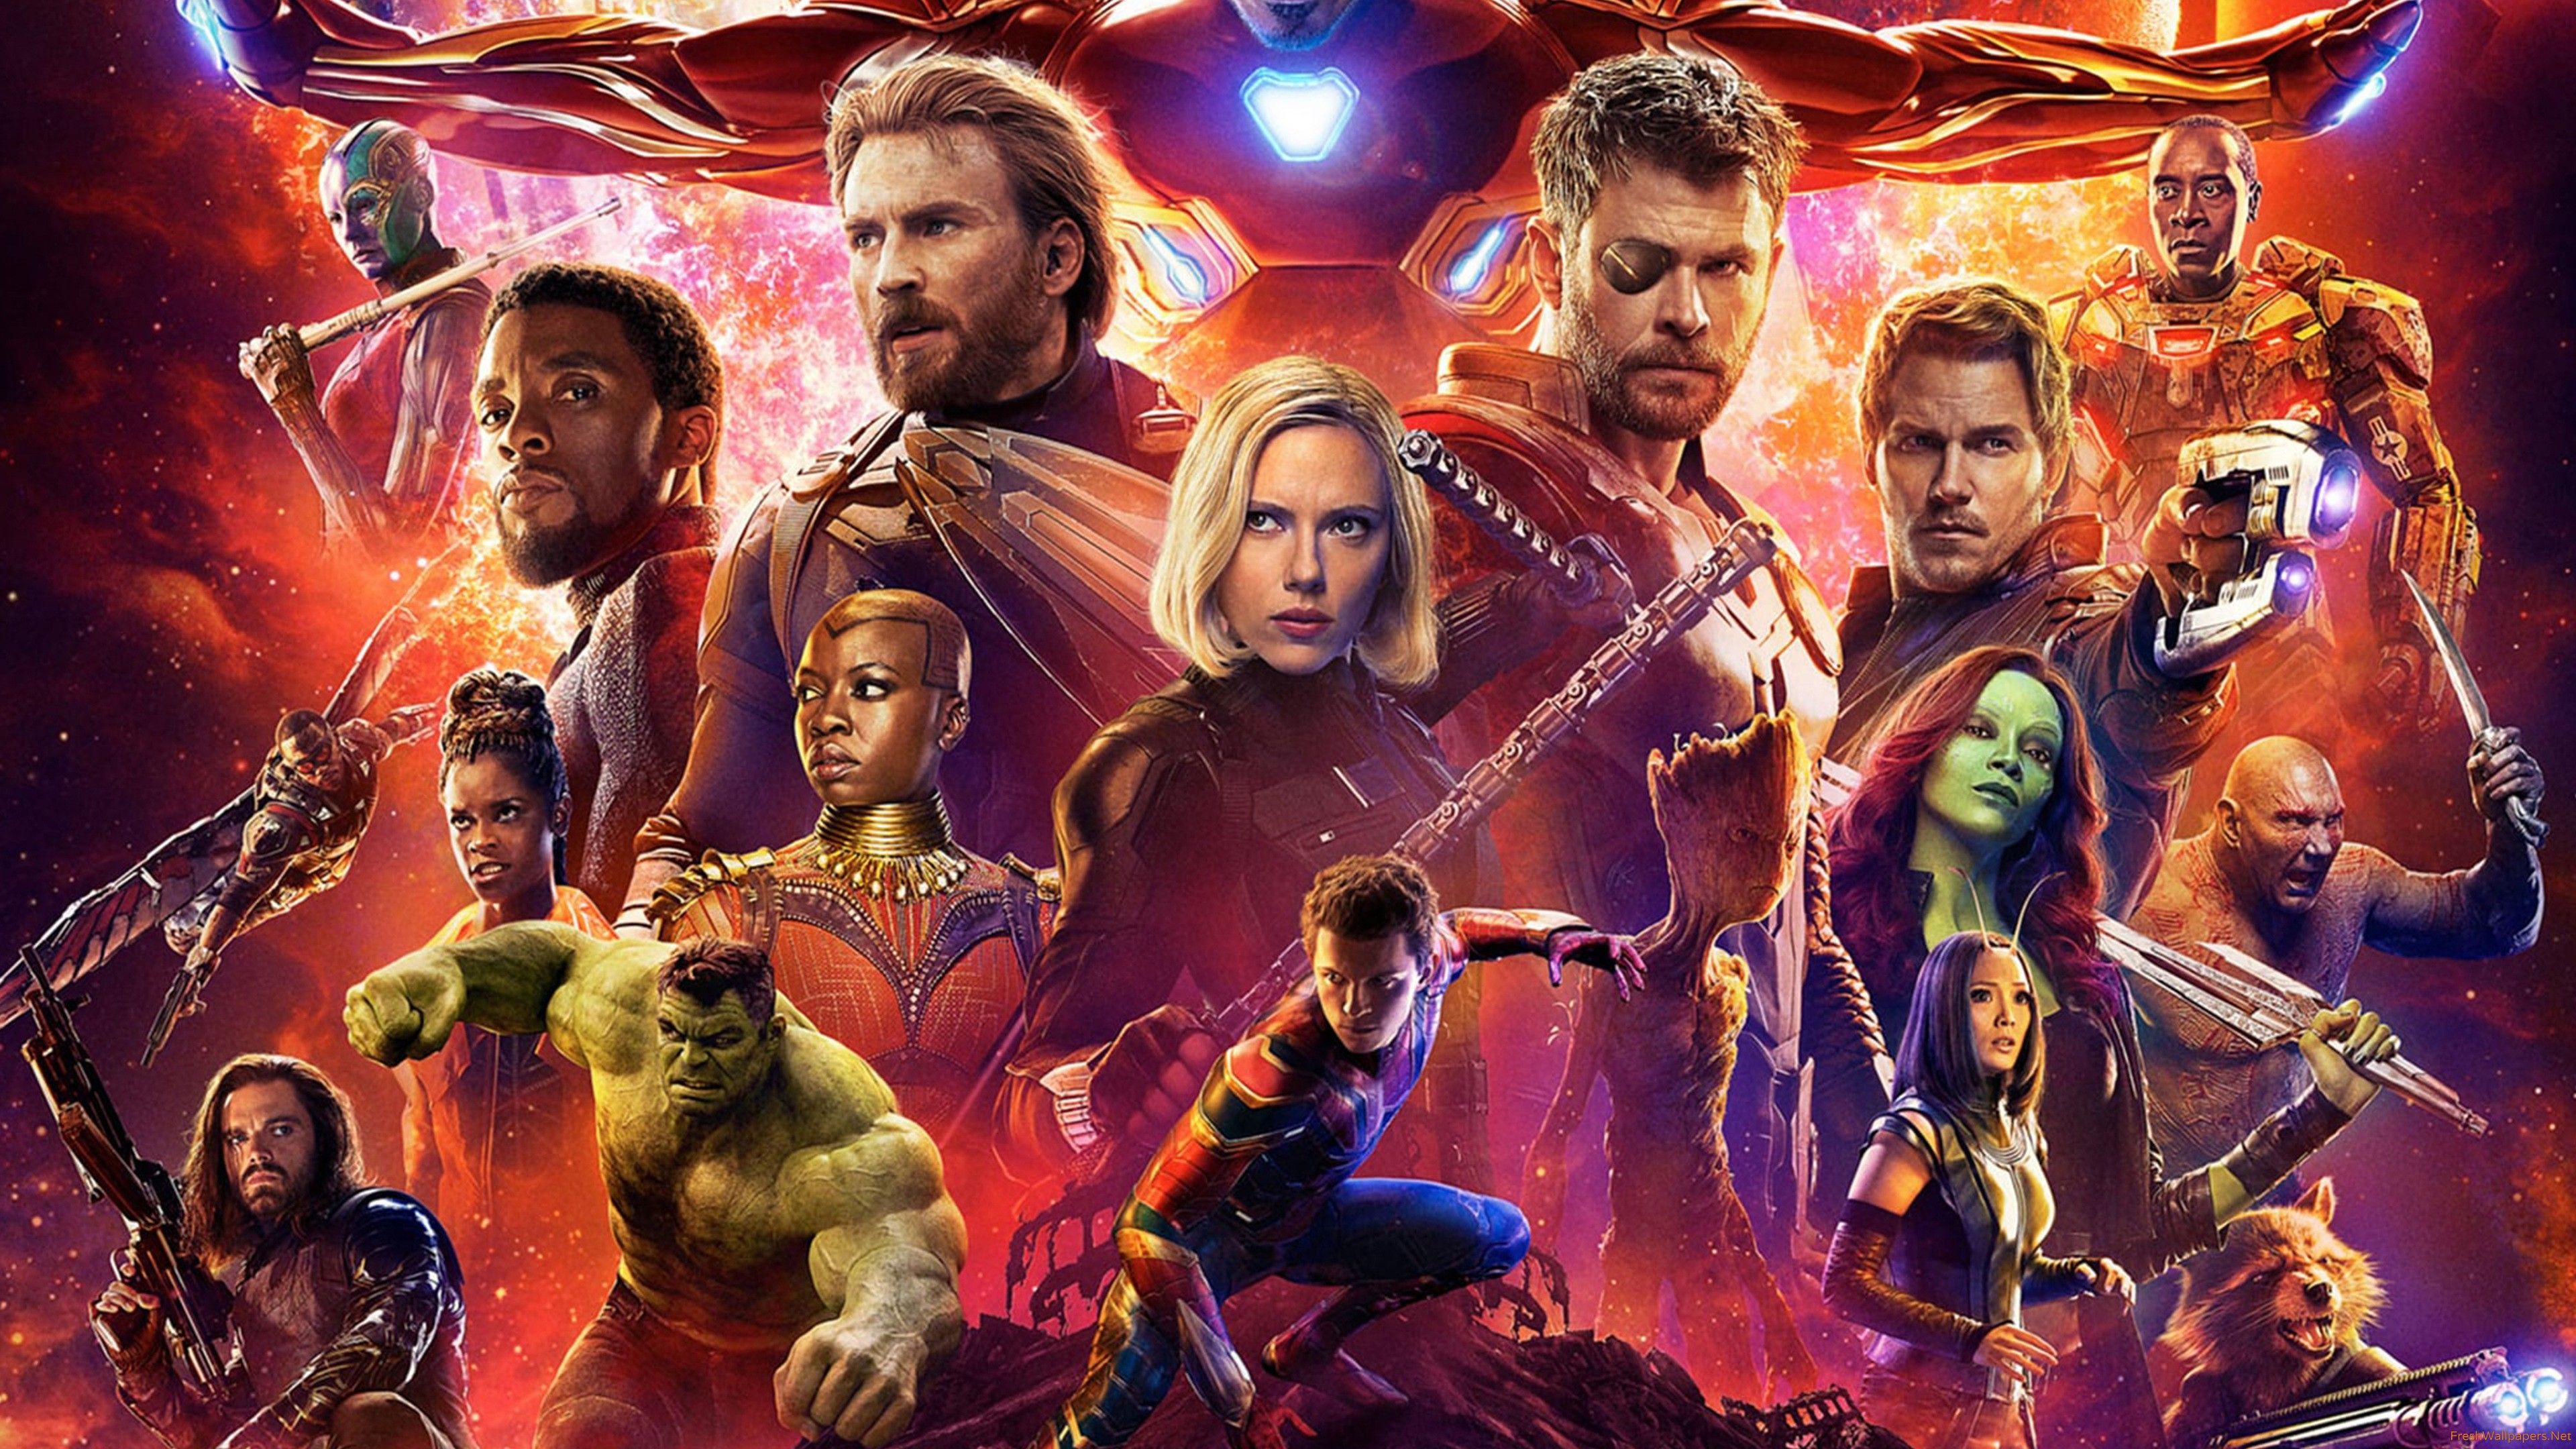 Avengers Infinity War Poster Widescreen Wallpaper Free